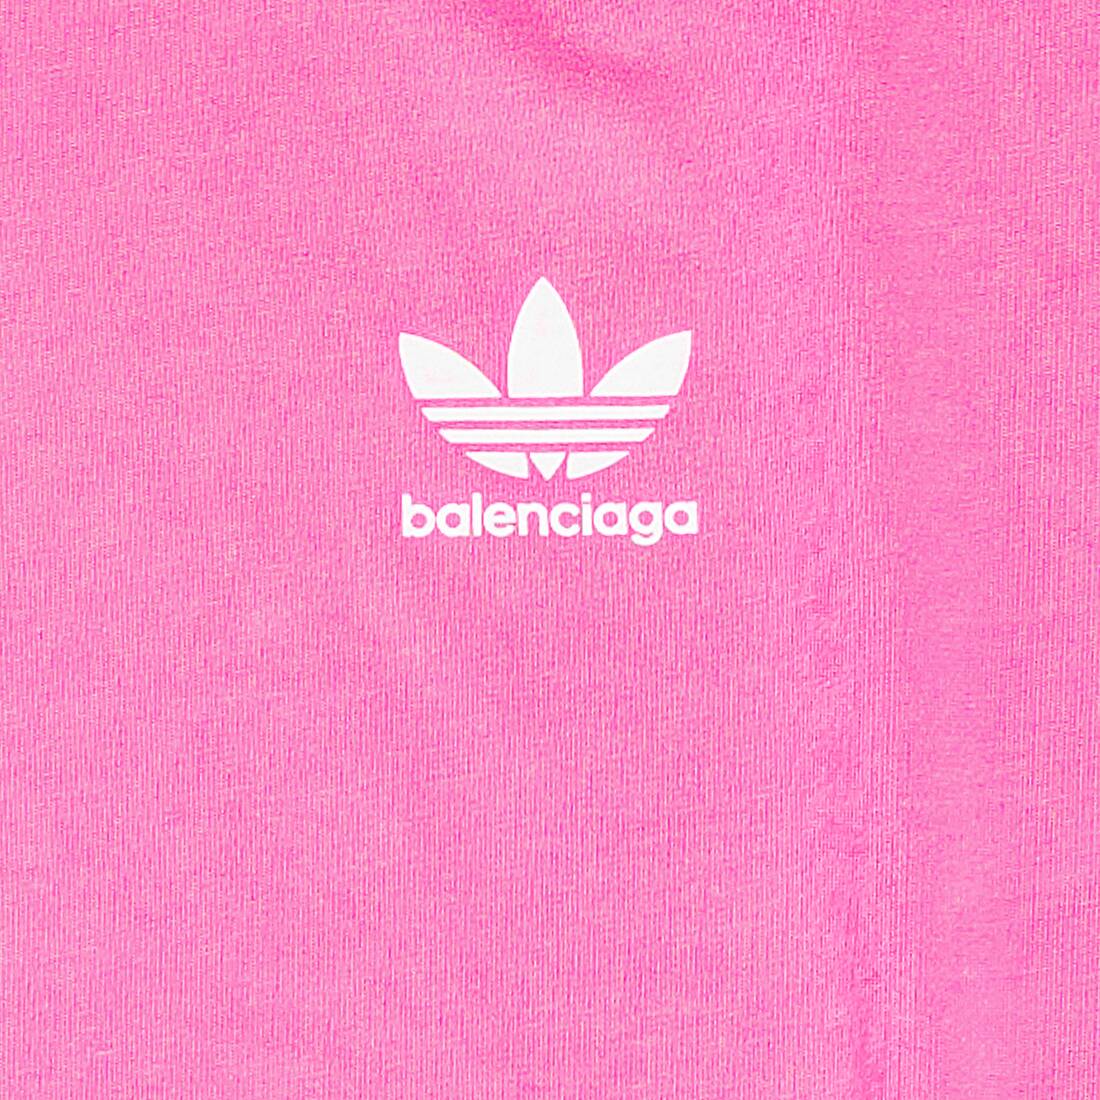 Balenciaga  LogoEmbroidered CottonJersey TShirt  Pink Balenciaga